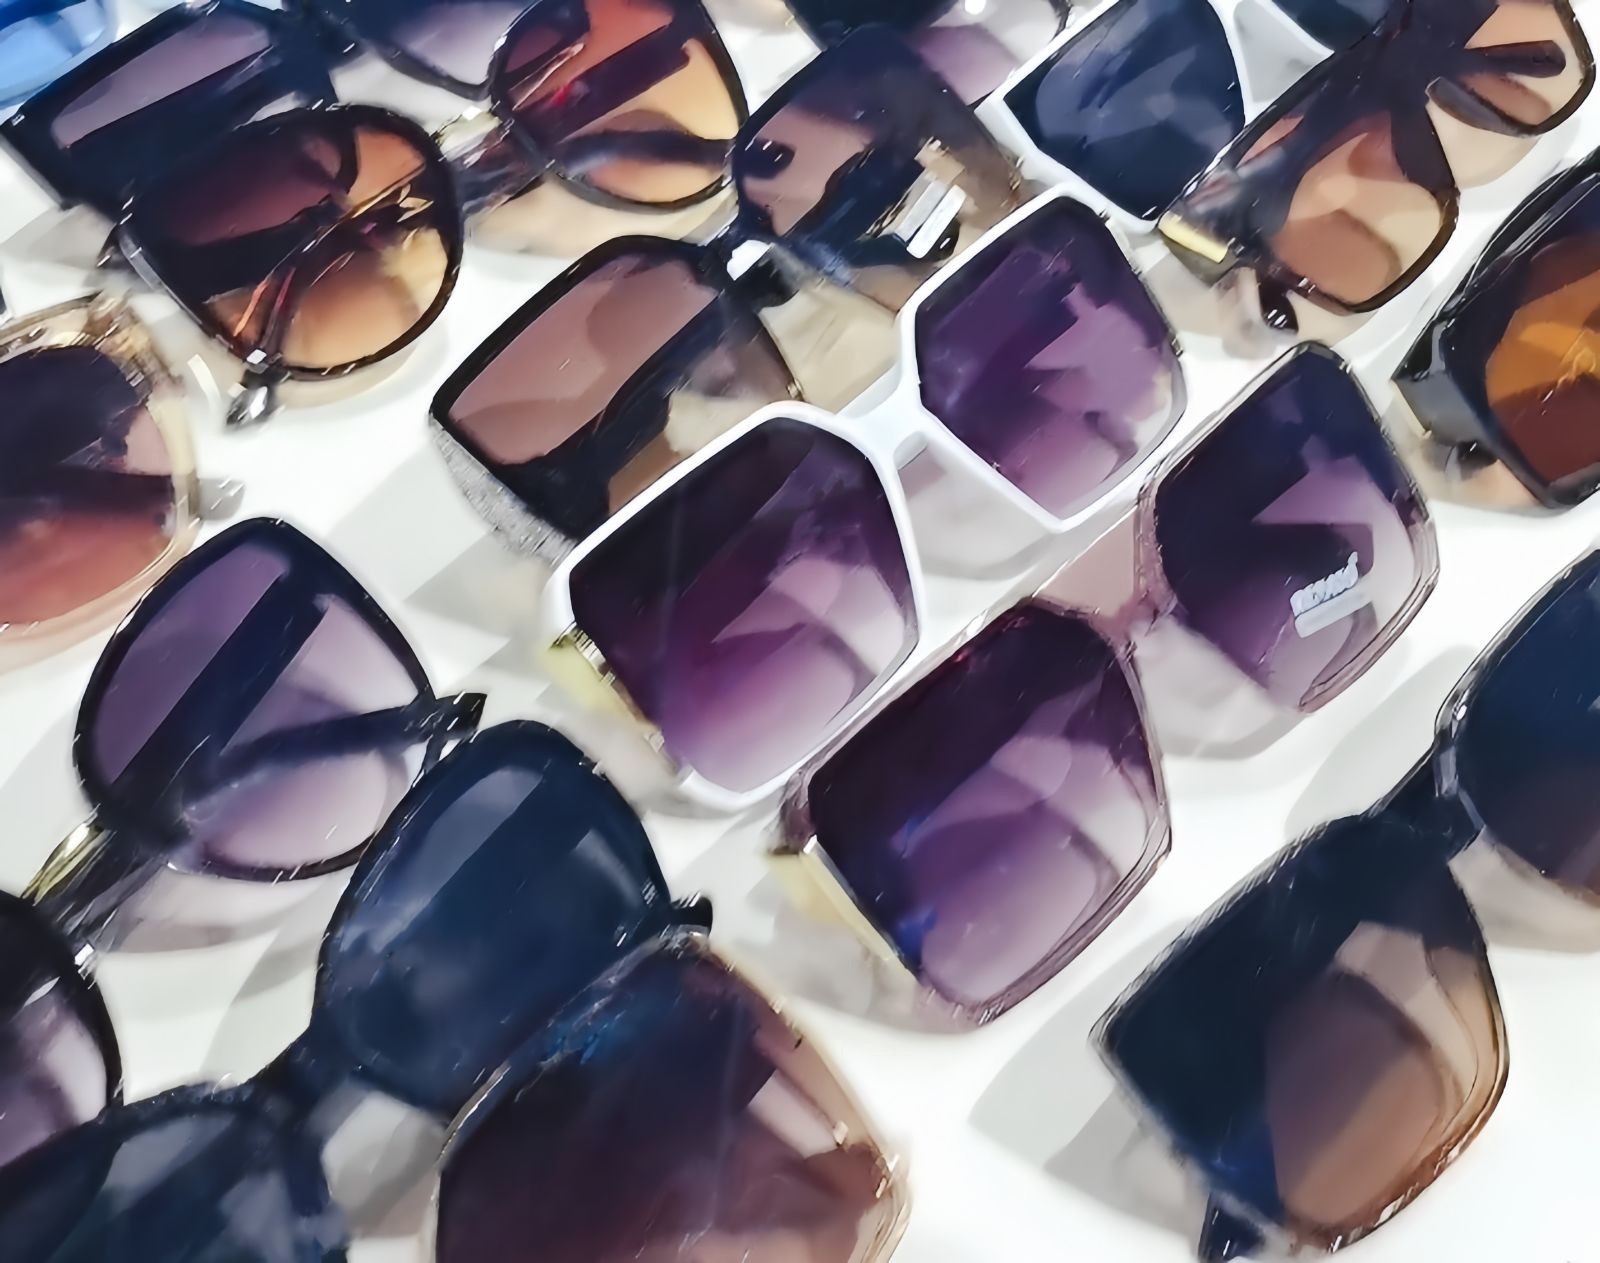 COTV全球直播-台州臻靓眼镜有限公司研发生产各种男女时尚休闲眼镜、老花眼镜、太阳眼镜及各种配套镜片、镜架等产品，欢迎大家光临！